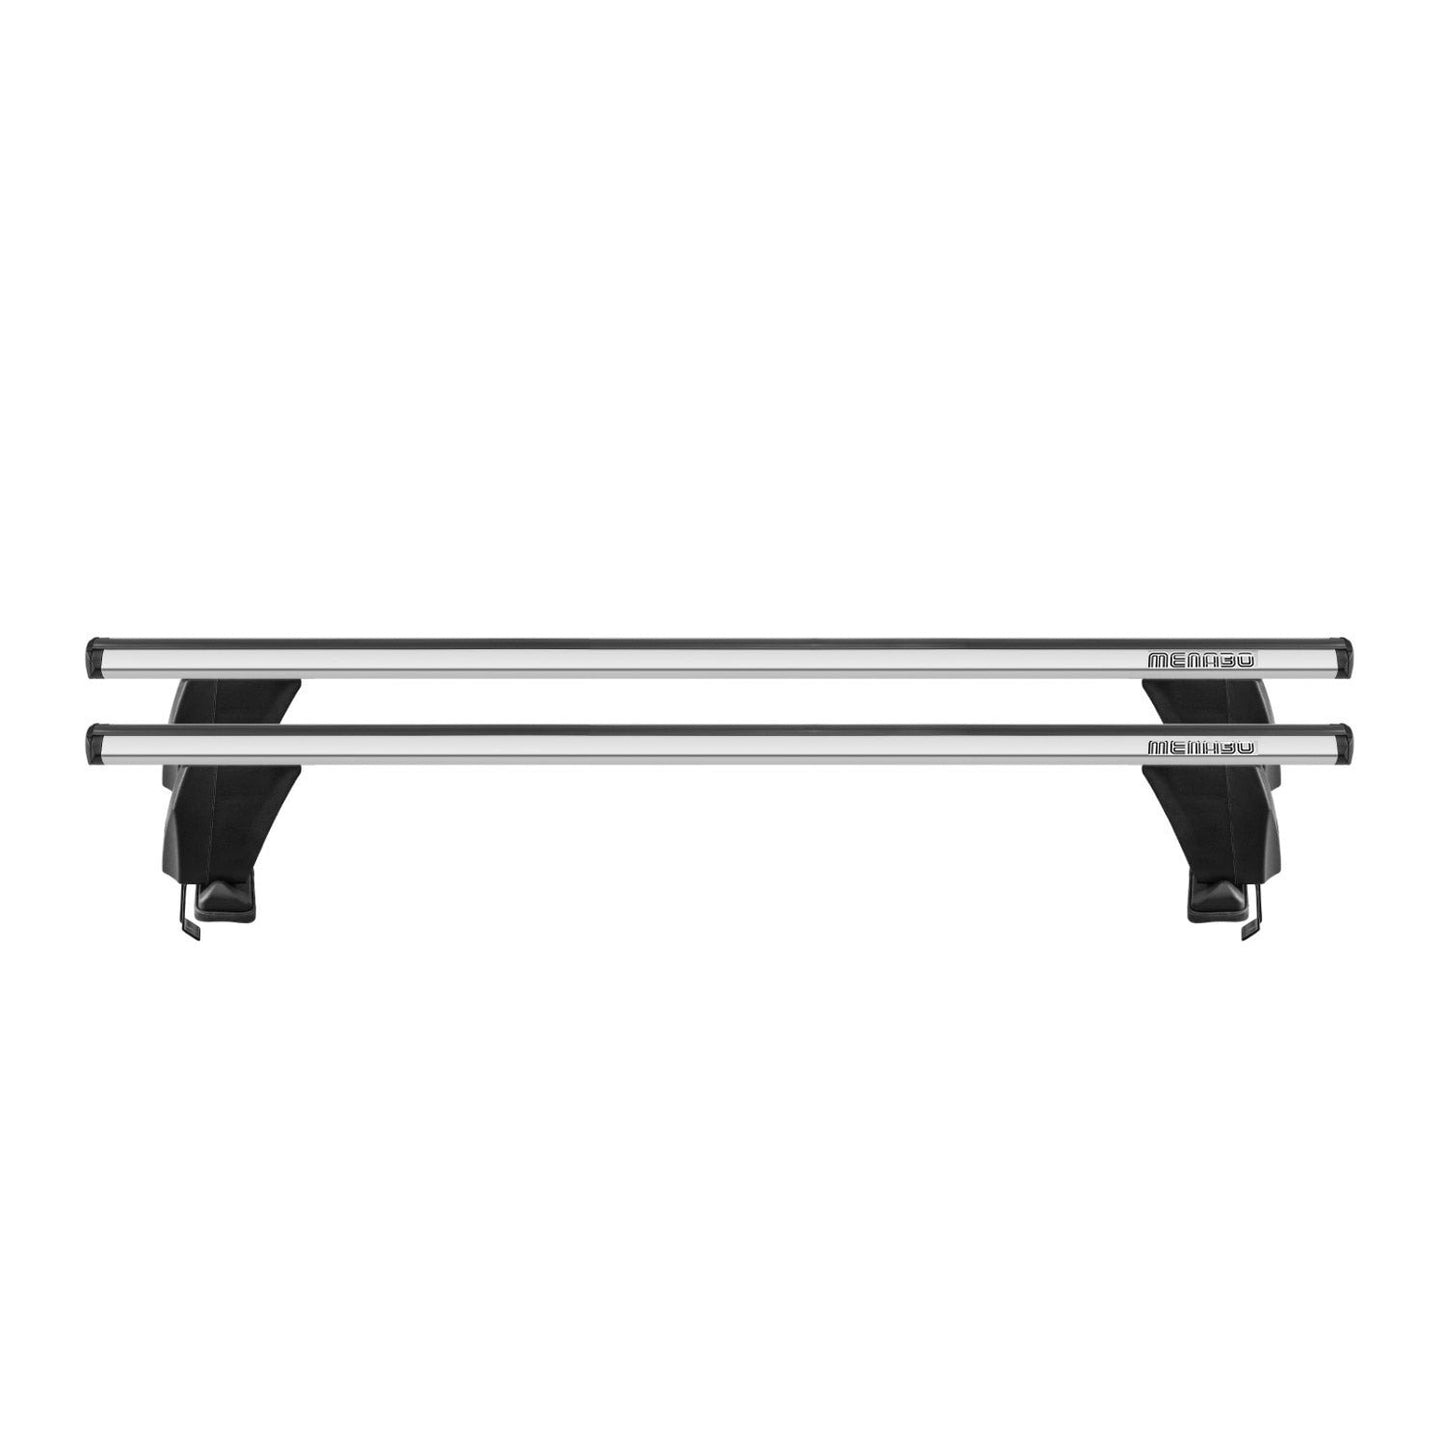 OMAC Top Roof Racks Cross Bars fits Hyundai Sonata 2011-2014 2Pcs Gray Aluminium G003115